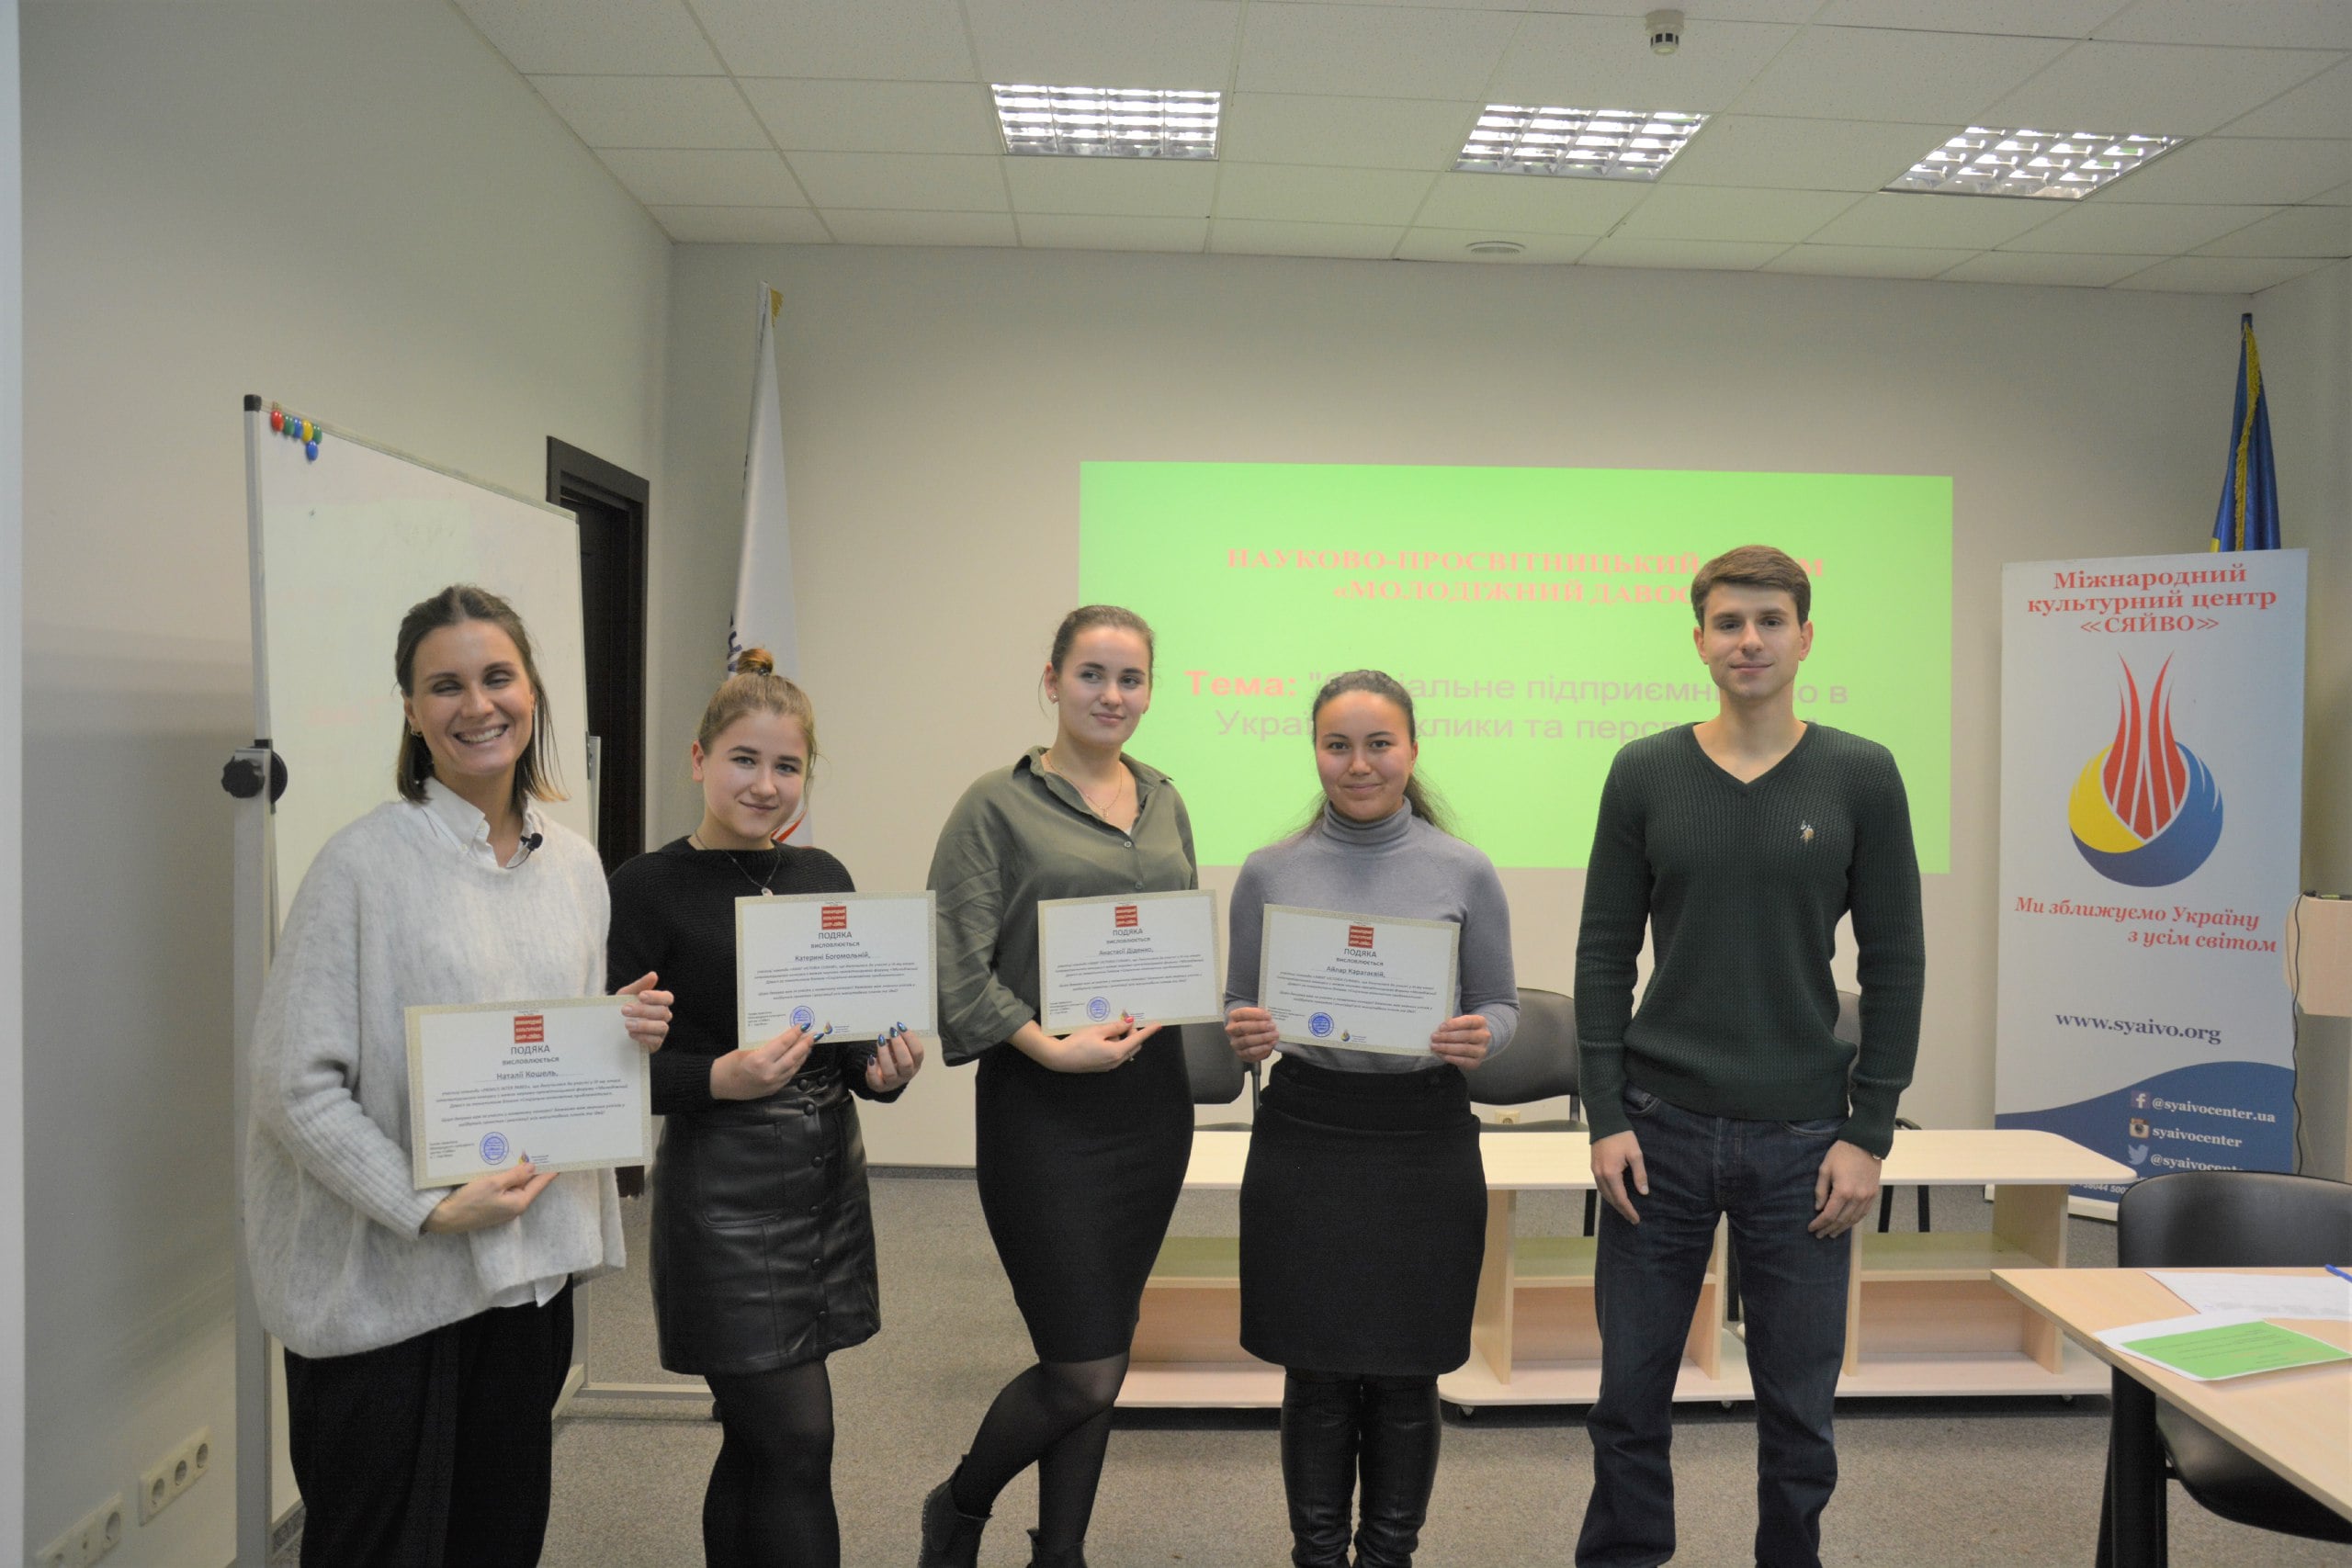 Студенти Факультету міжнародних відносин НАУ взяли участь у науково-практичному заході для студентства «Молодіжний Давос»